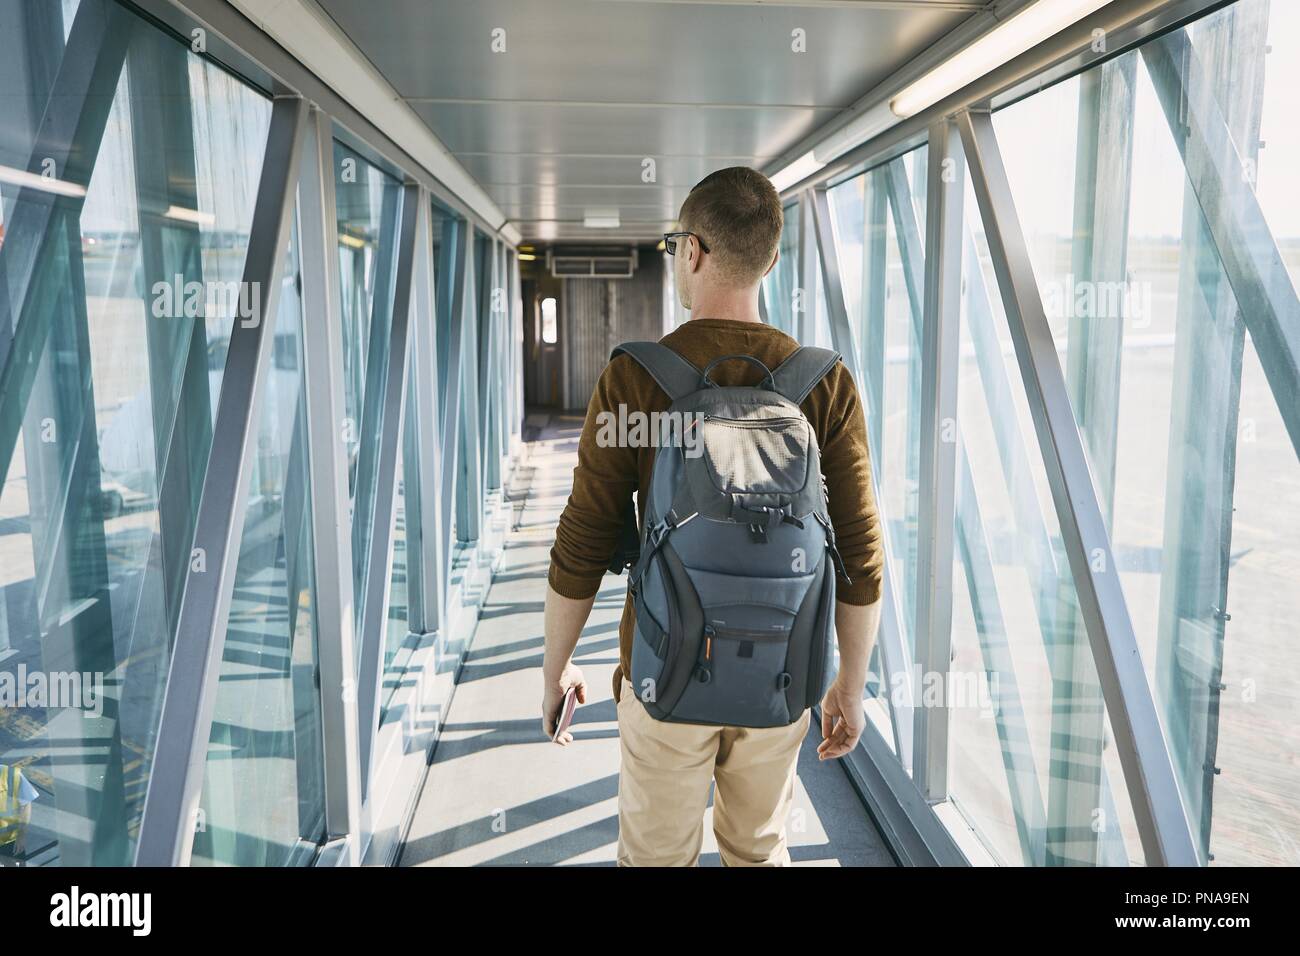 Viaggiare in aereo. Vista posteriore del giovane con zaino e passaporto in mano durante l'imbarco in aeroporto. Foto Stock